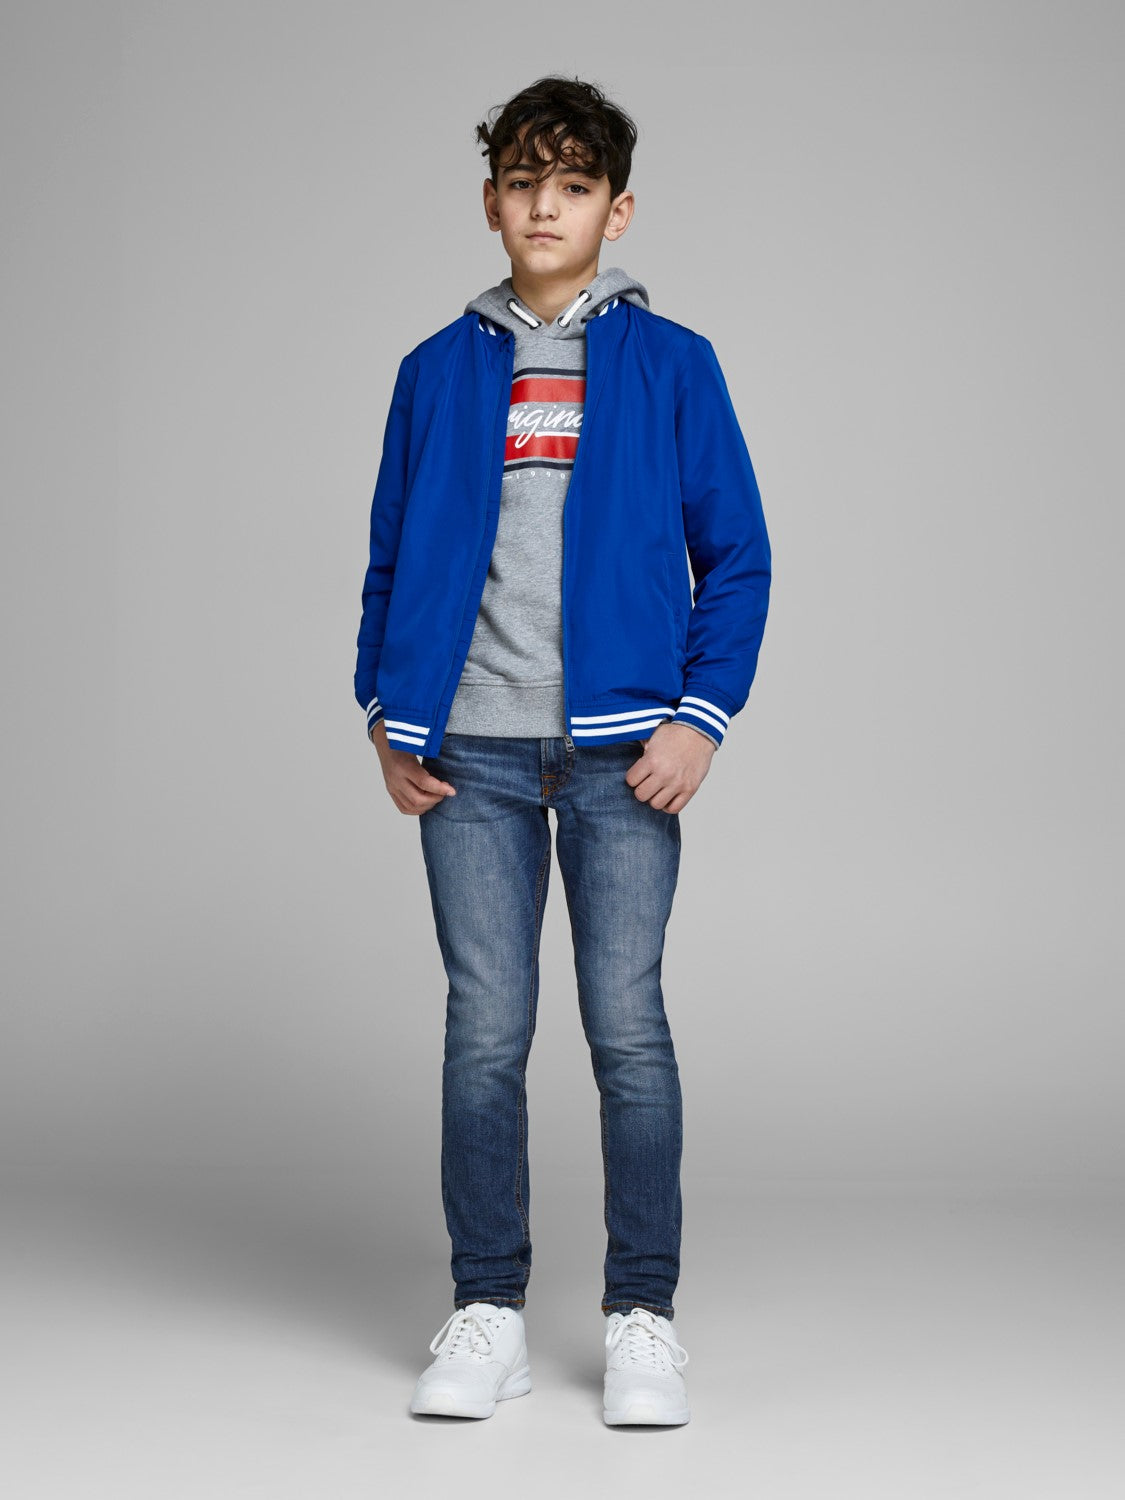 Liam 871 Junior Skinny Jean - Spirit Clothing